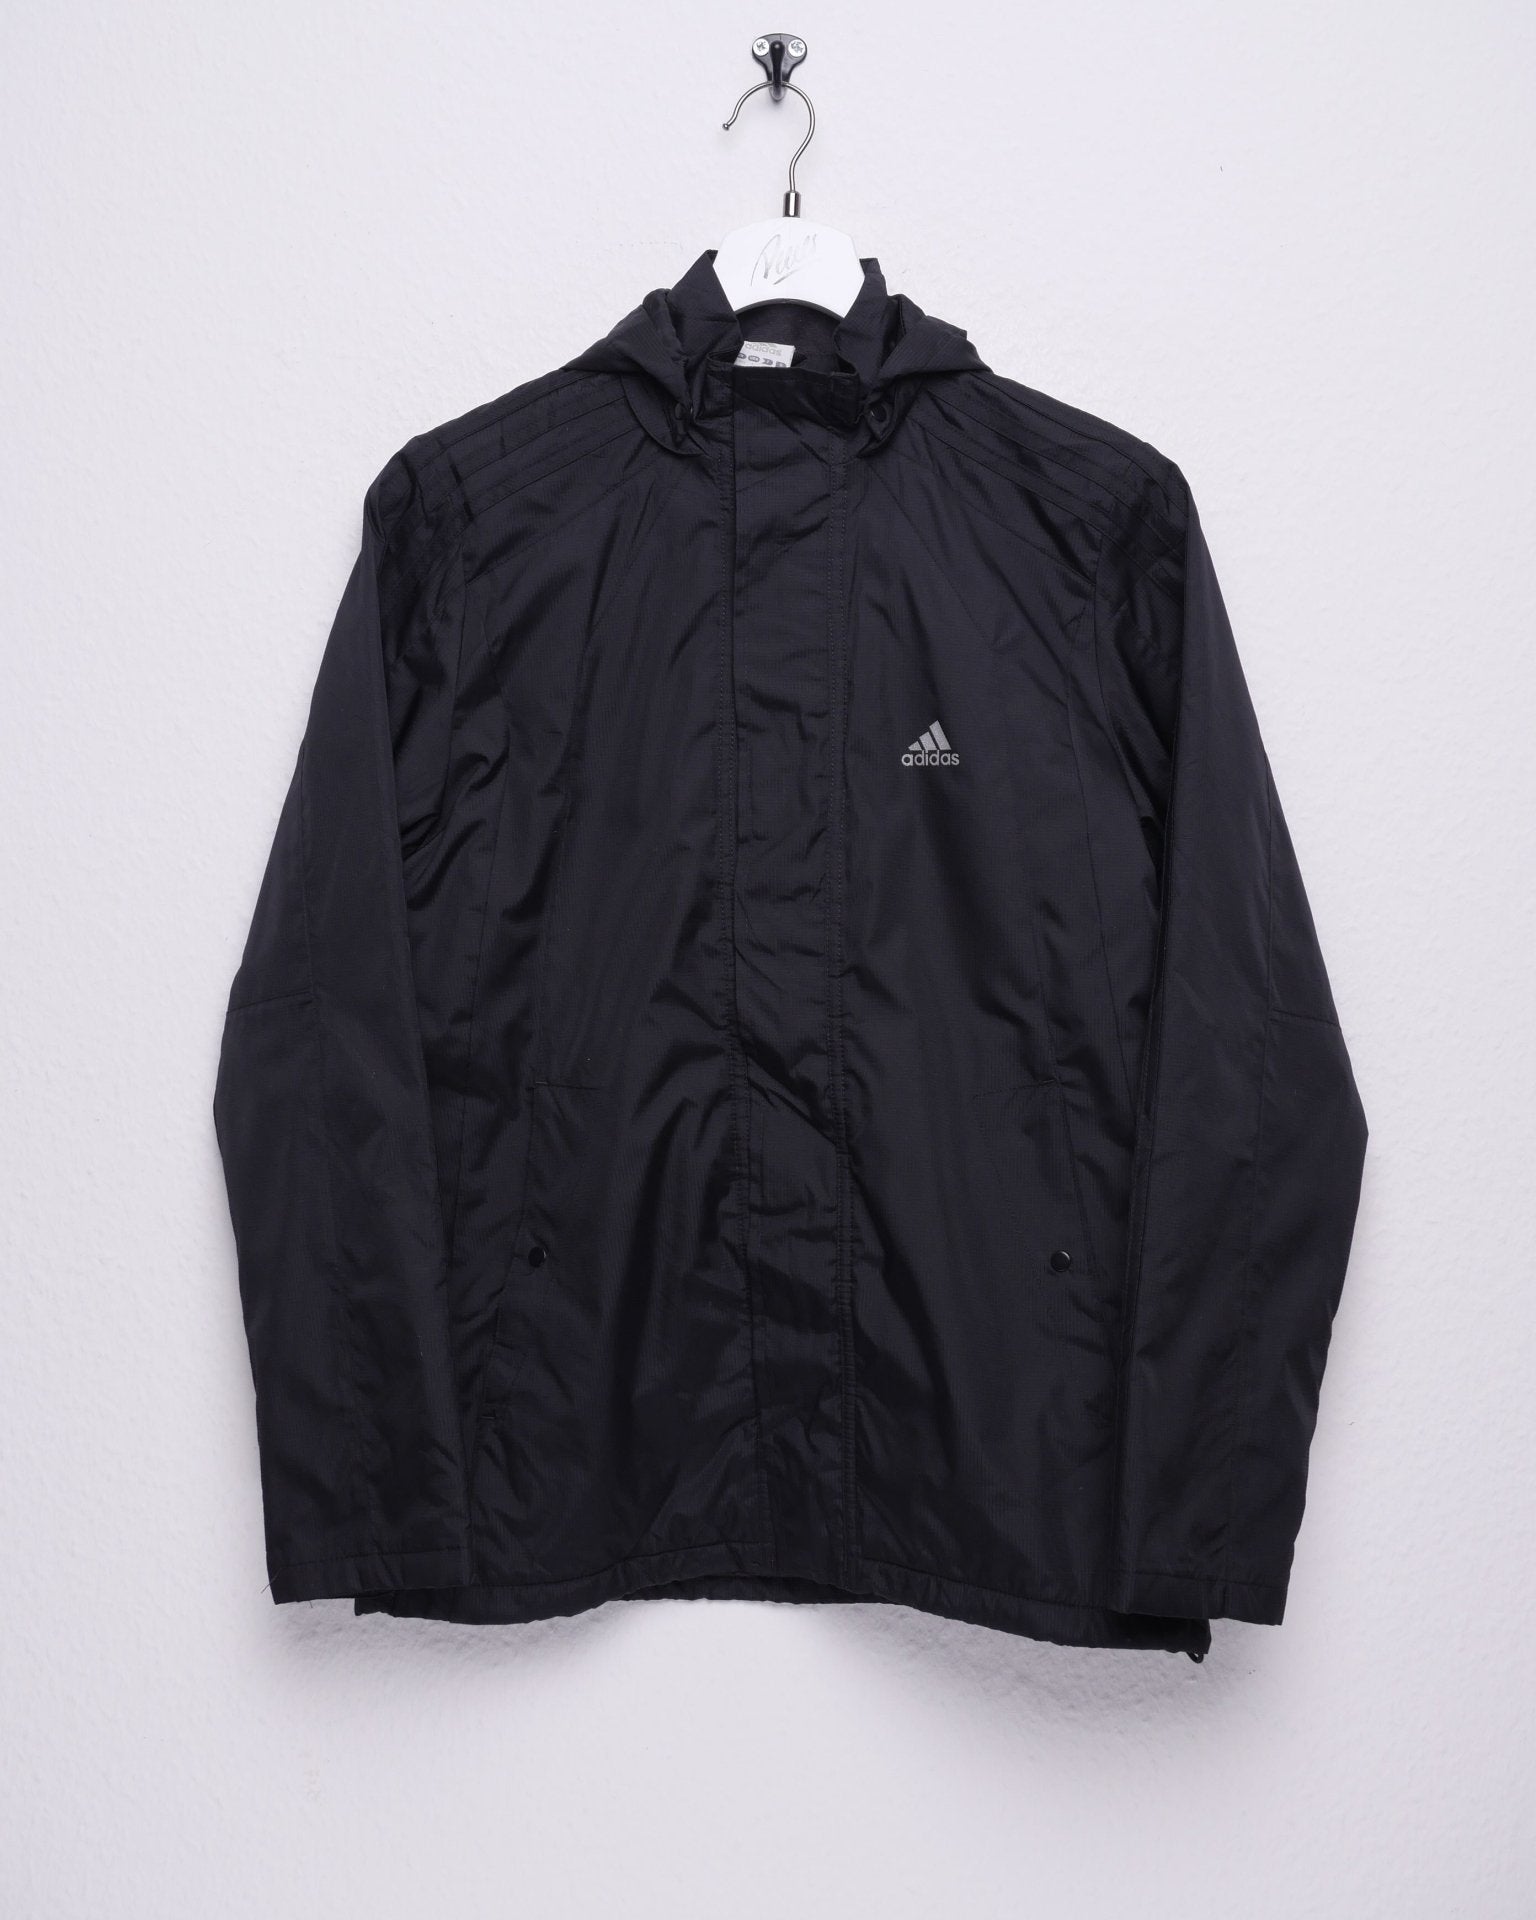 Adidas printed Logo Vintage black Track Jacket - Peeces